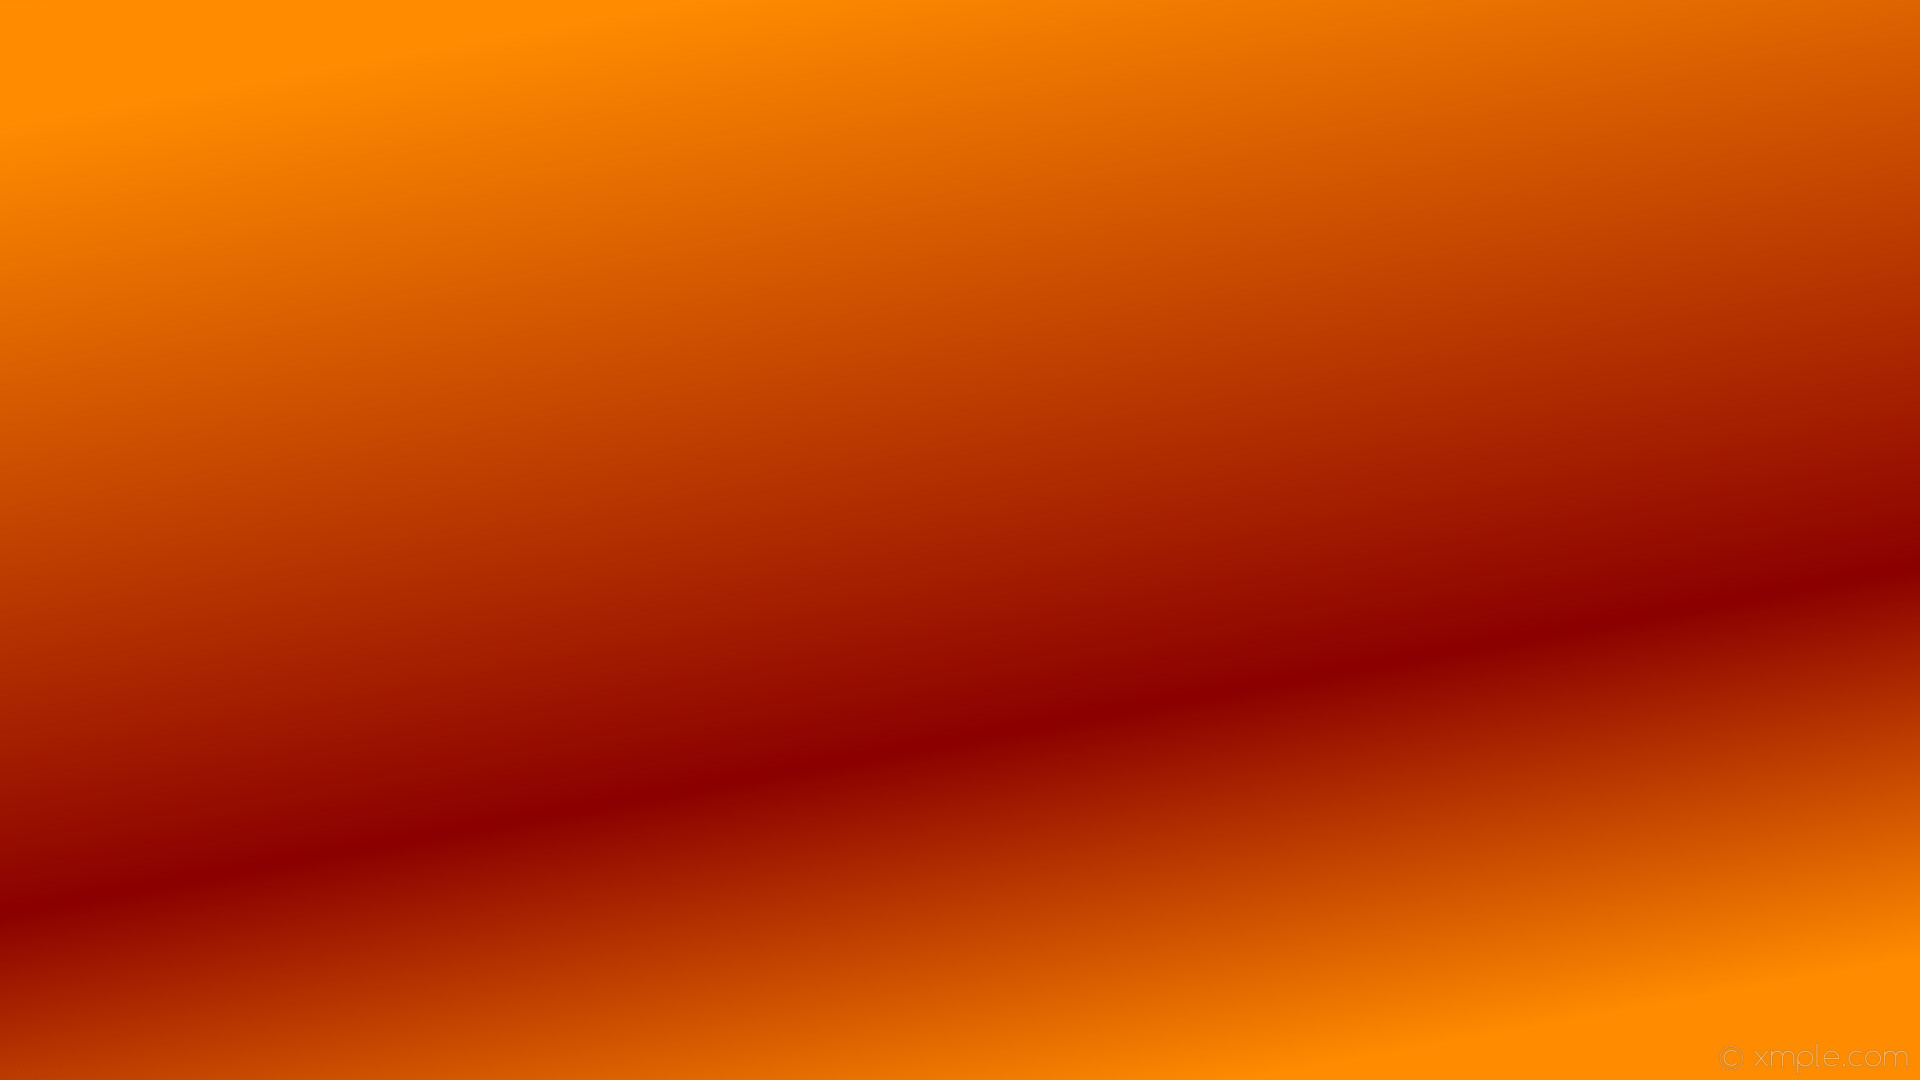 1920x1080 wallpaper gradient highlight red orange linear dark orange dark red #ff8c00  #8b0000 300Â°